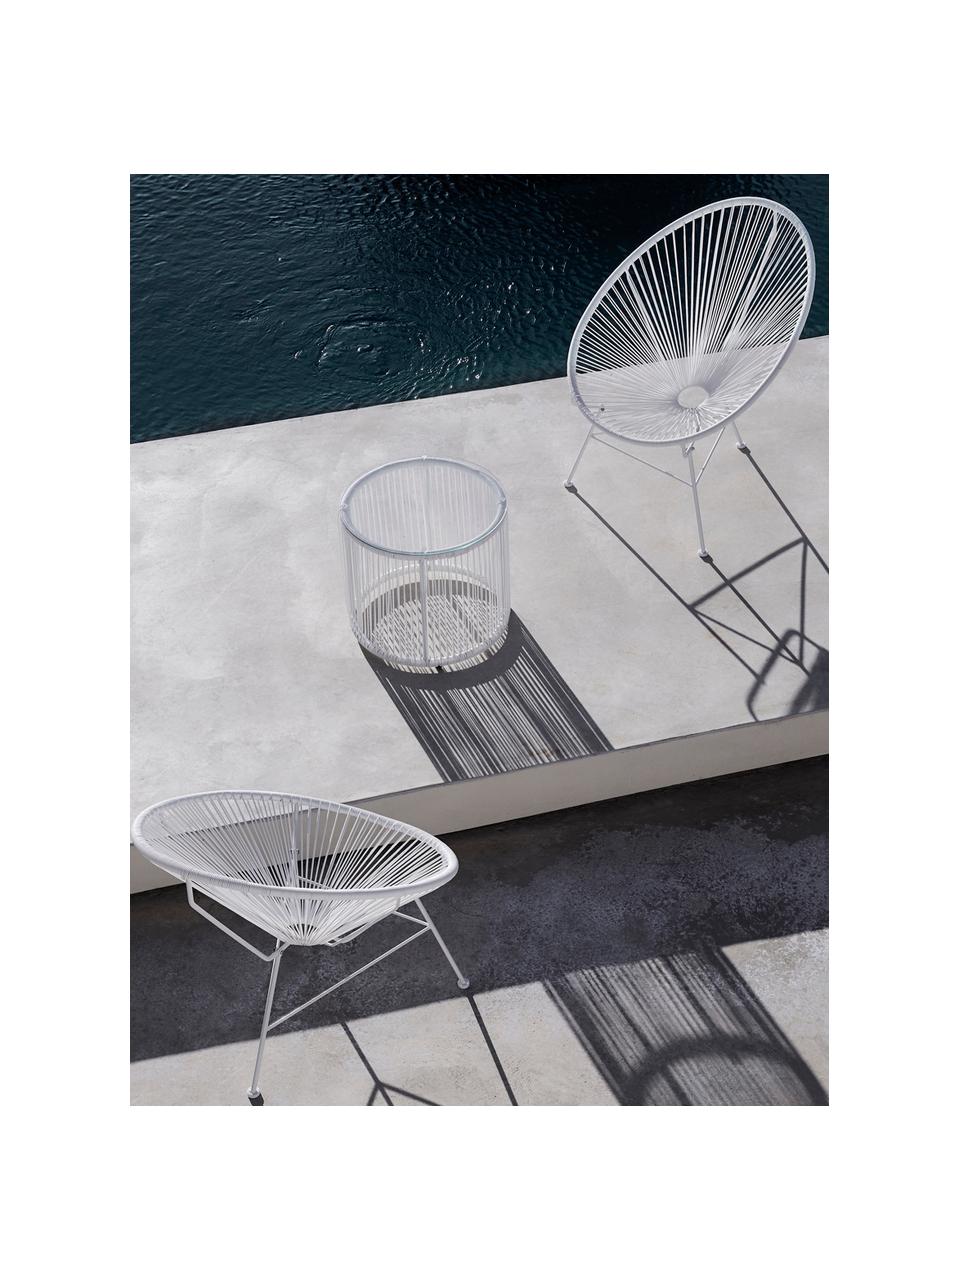 Mesa auxiliar de plástico Bahia, Tablero: vidrio, Estructura: aluminio con pintura en p, Blanco, Ø 50 x Al 45 cm